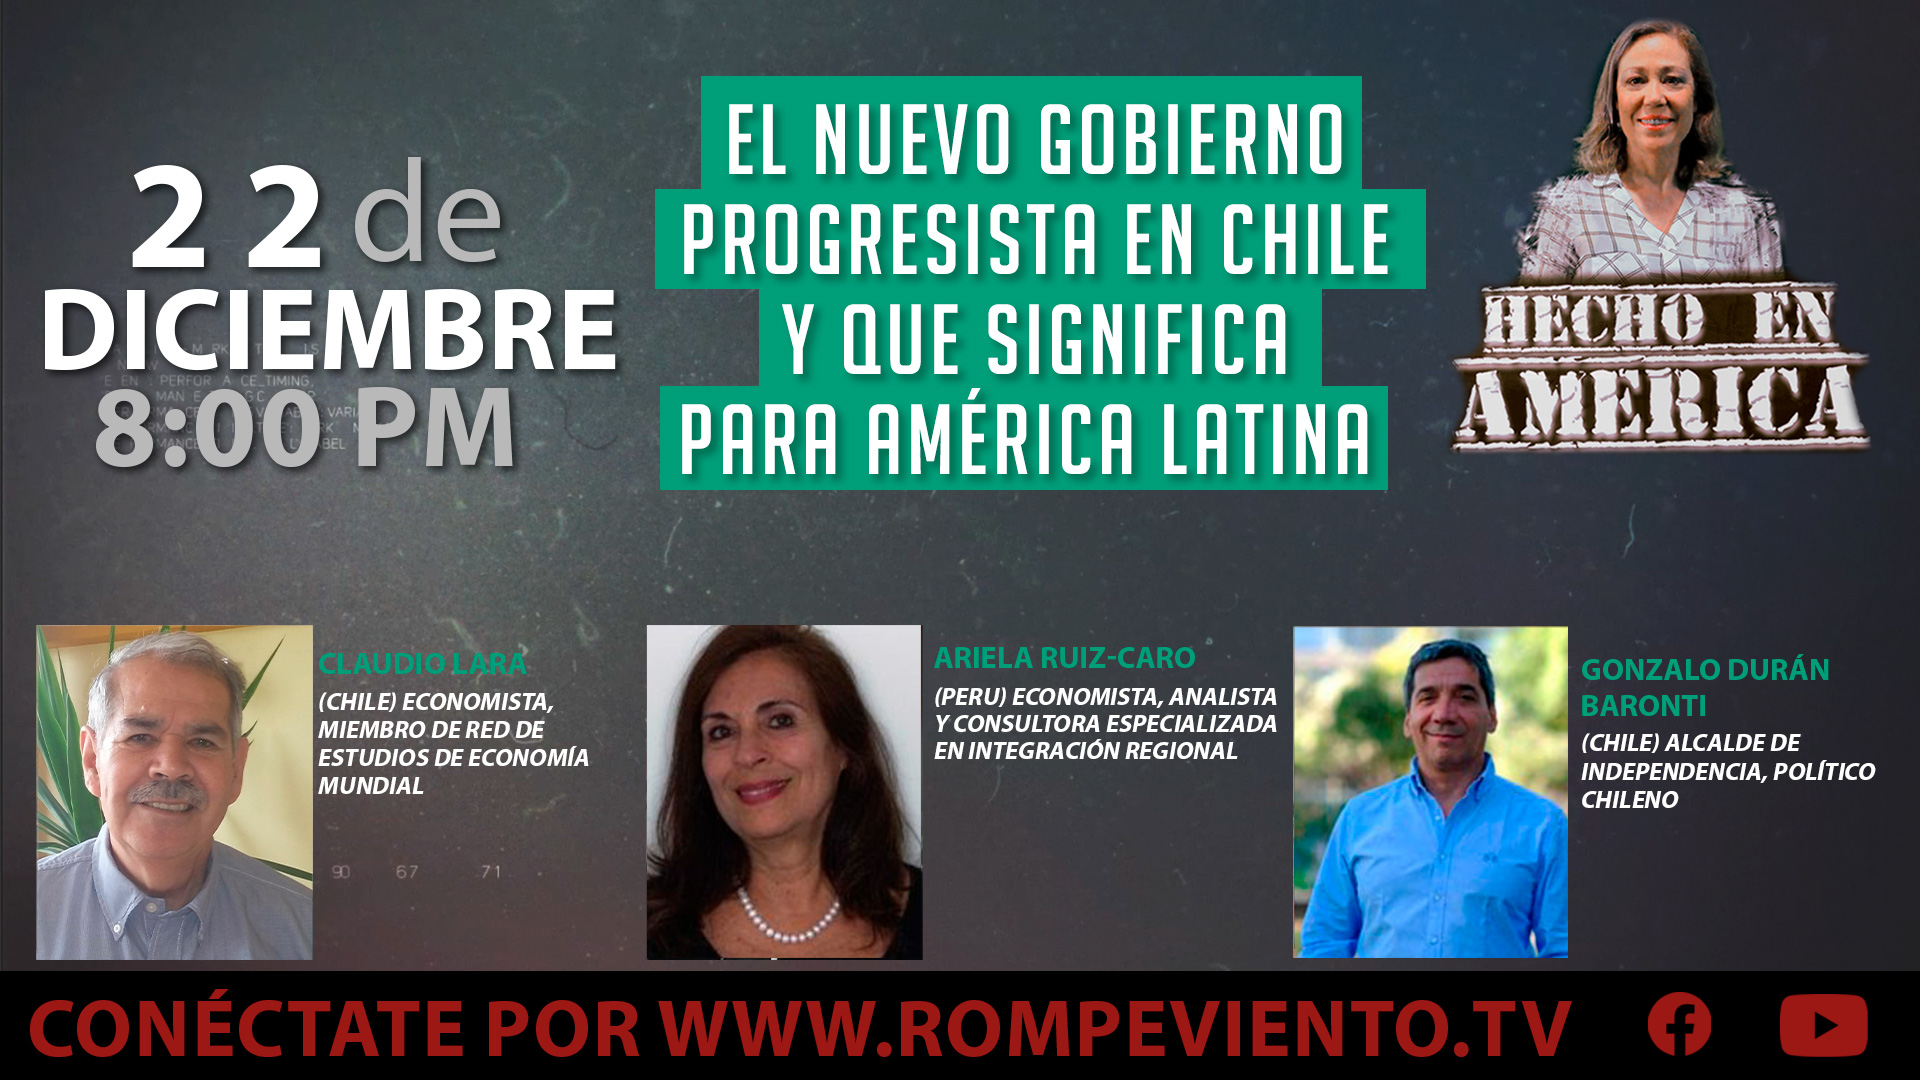 El nuevo gobierno progresista en Chile y que significa para América Latina - Hecho en América